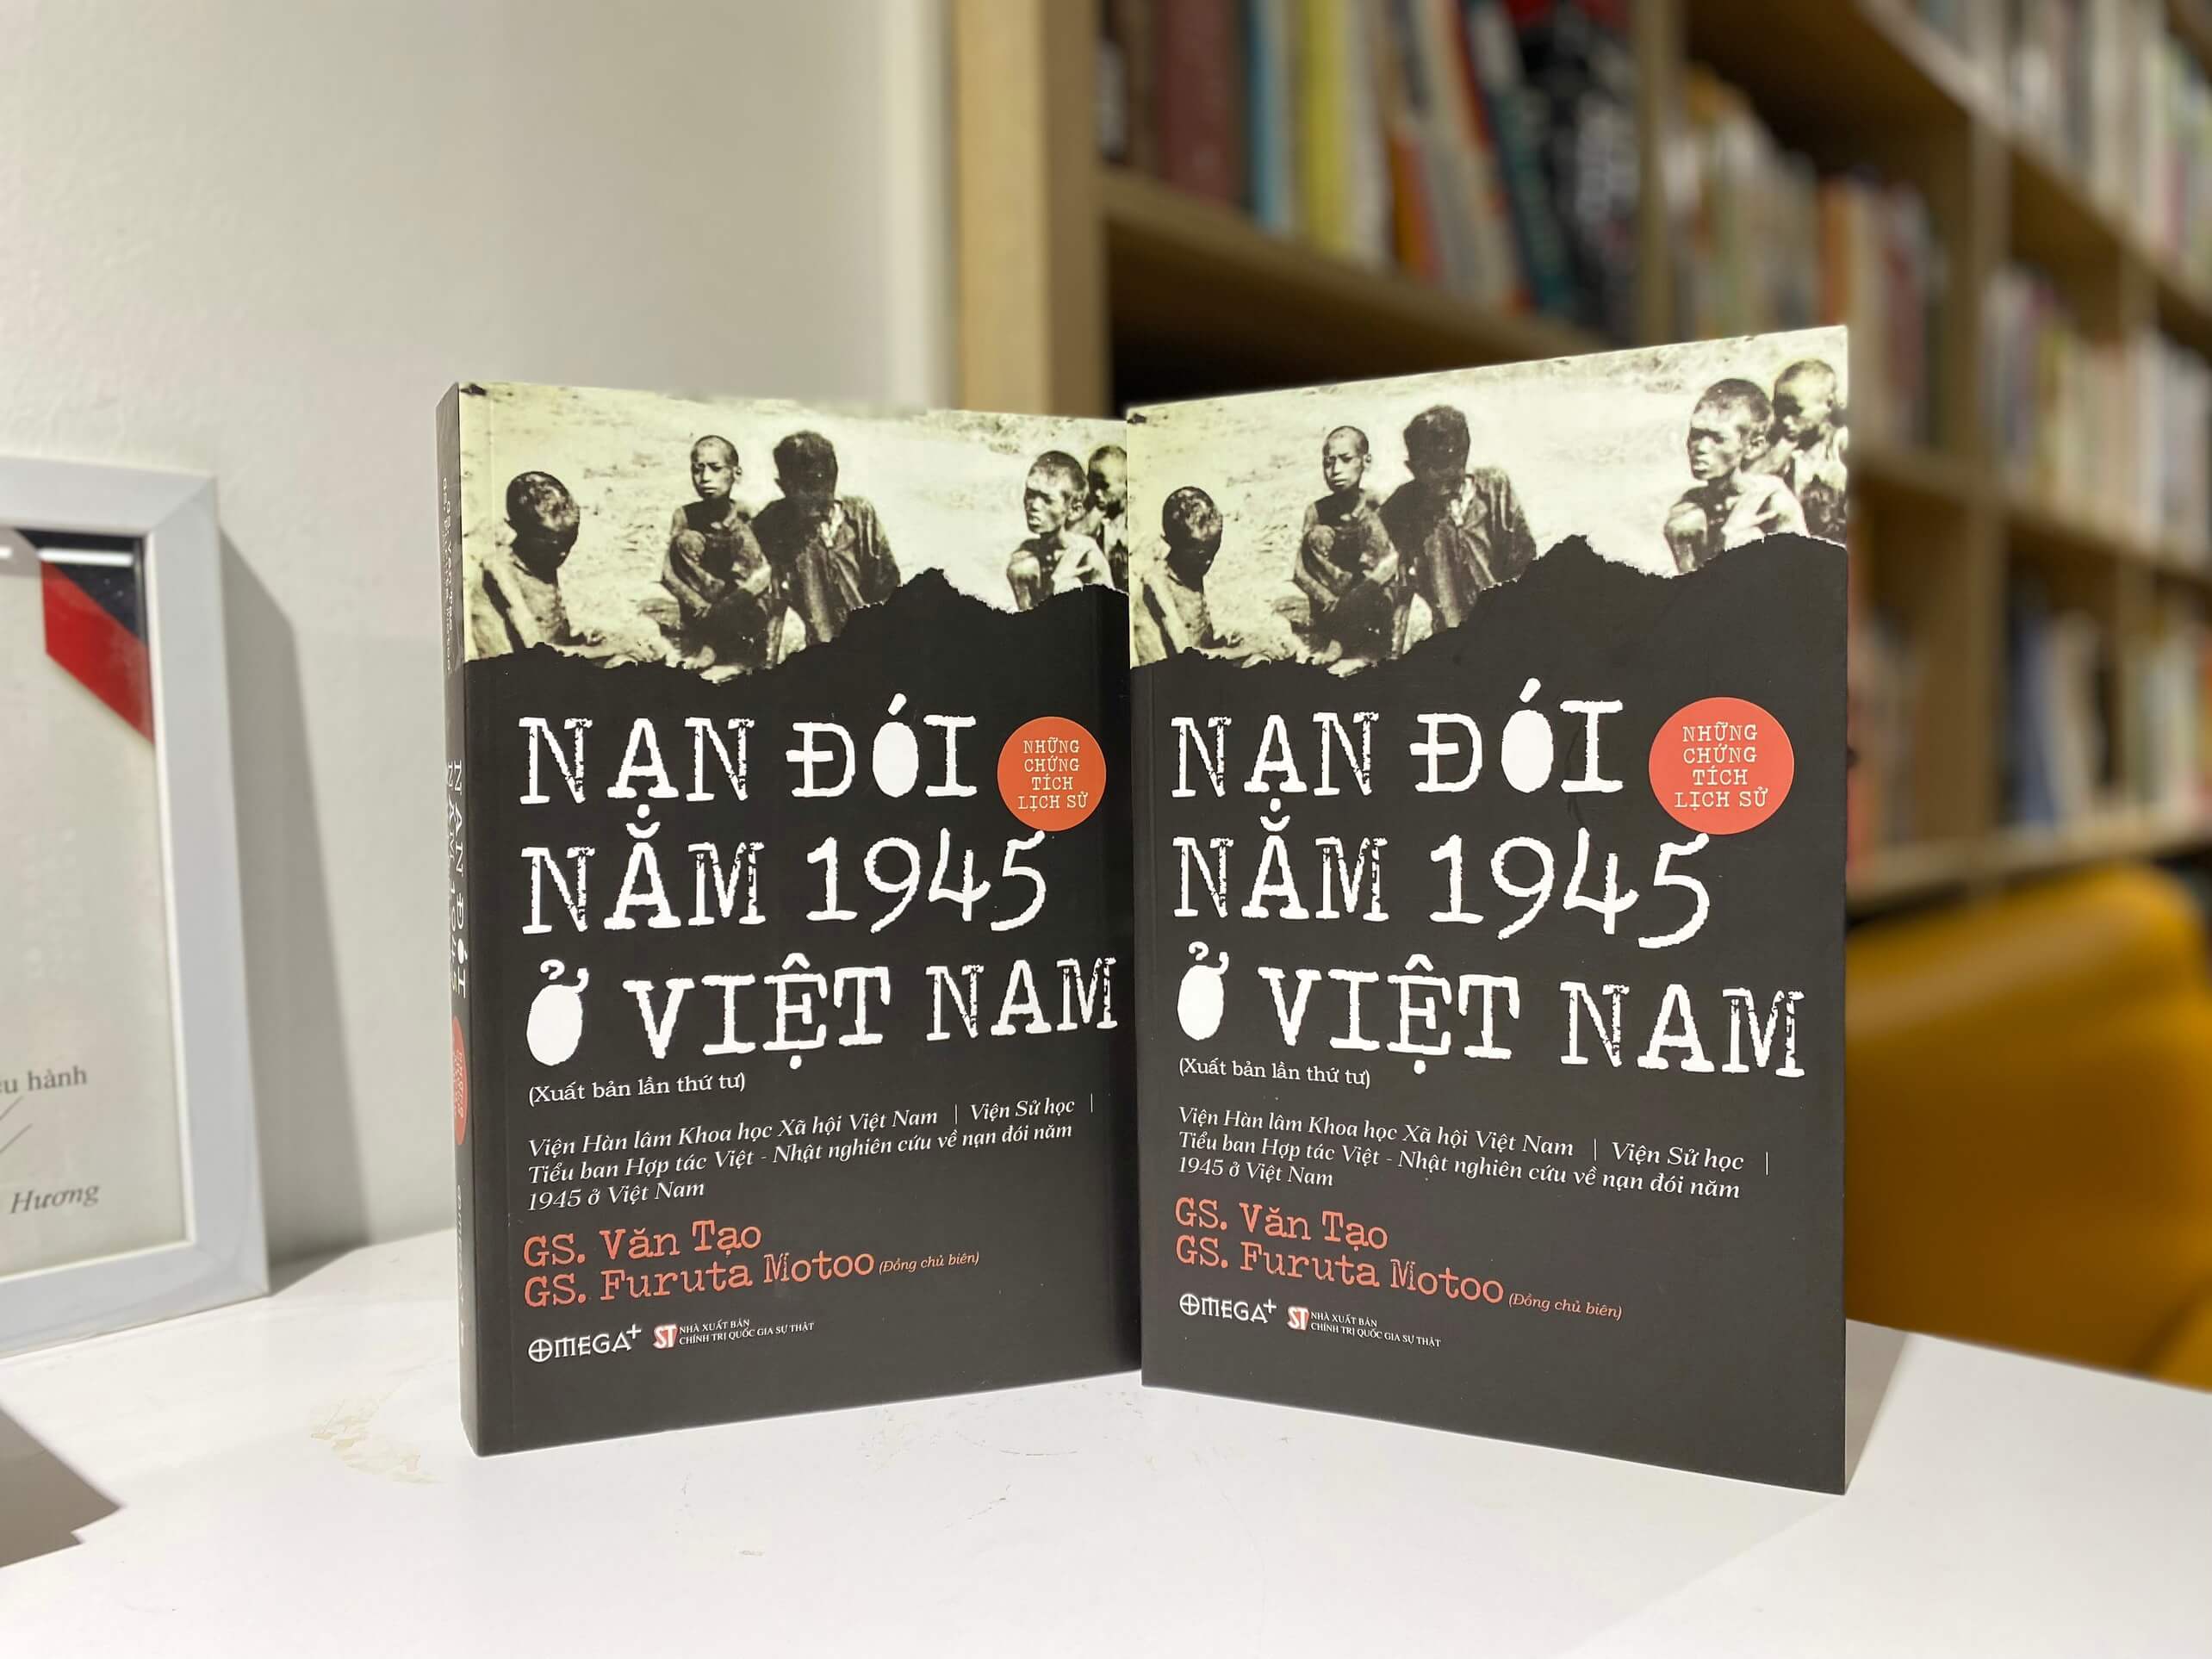 Nan doi nam 1945 anh 1